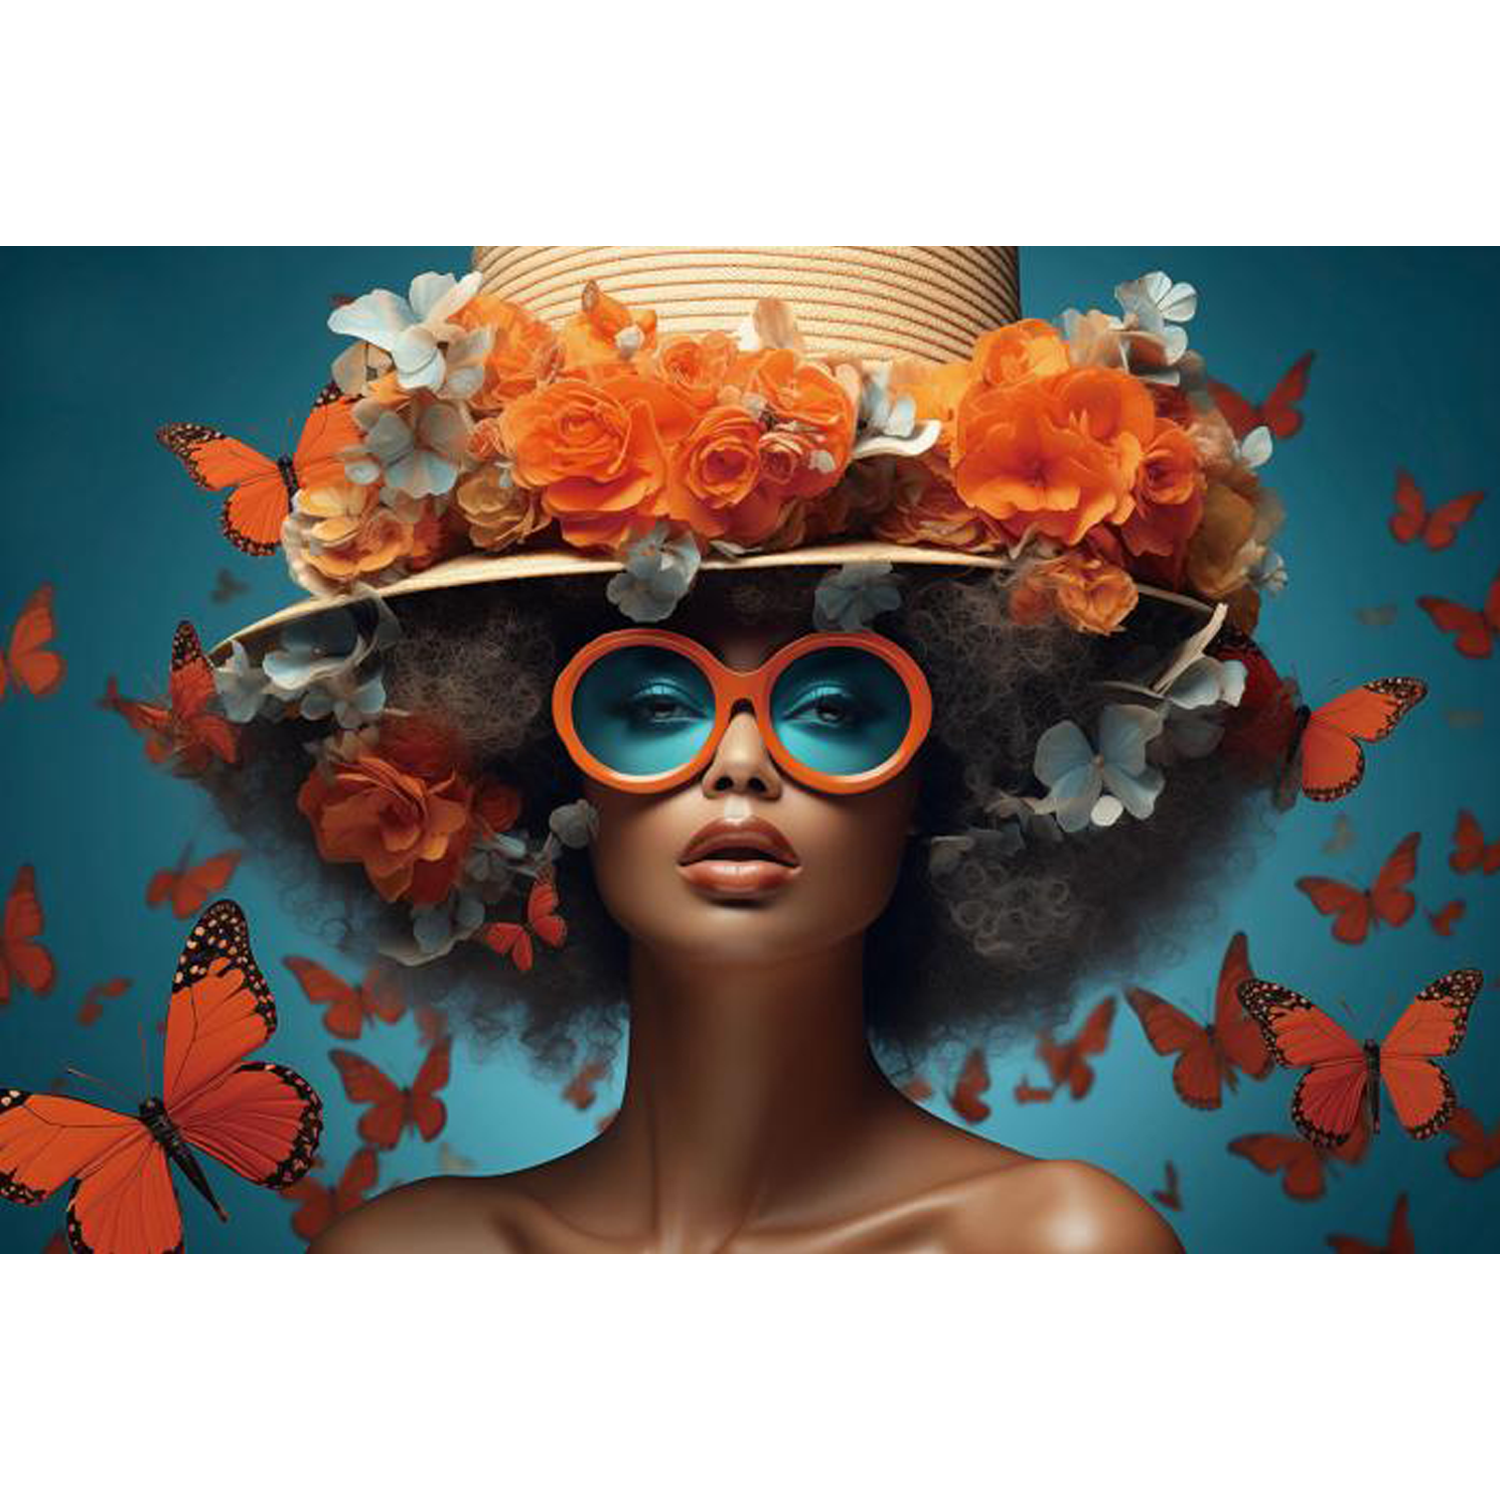 Glasschilderij Vrouw met oranje vlinders 120x80 cm